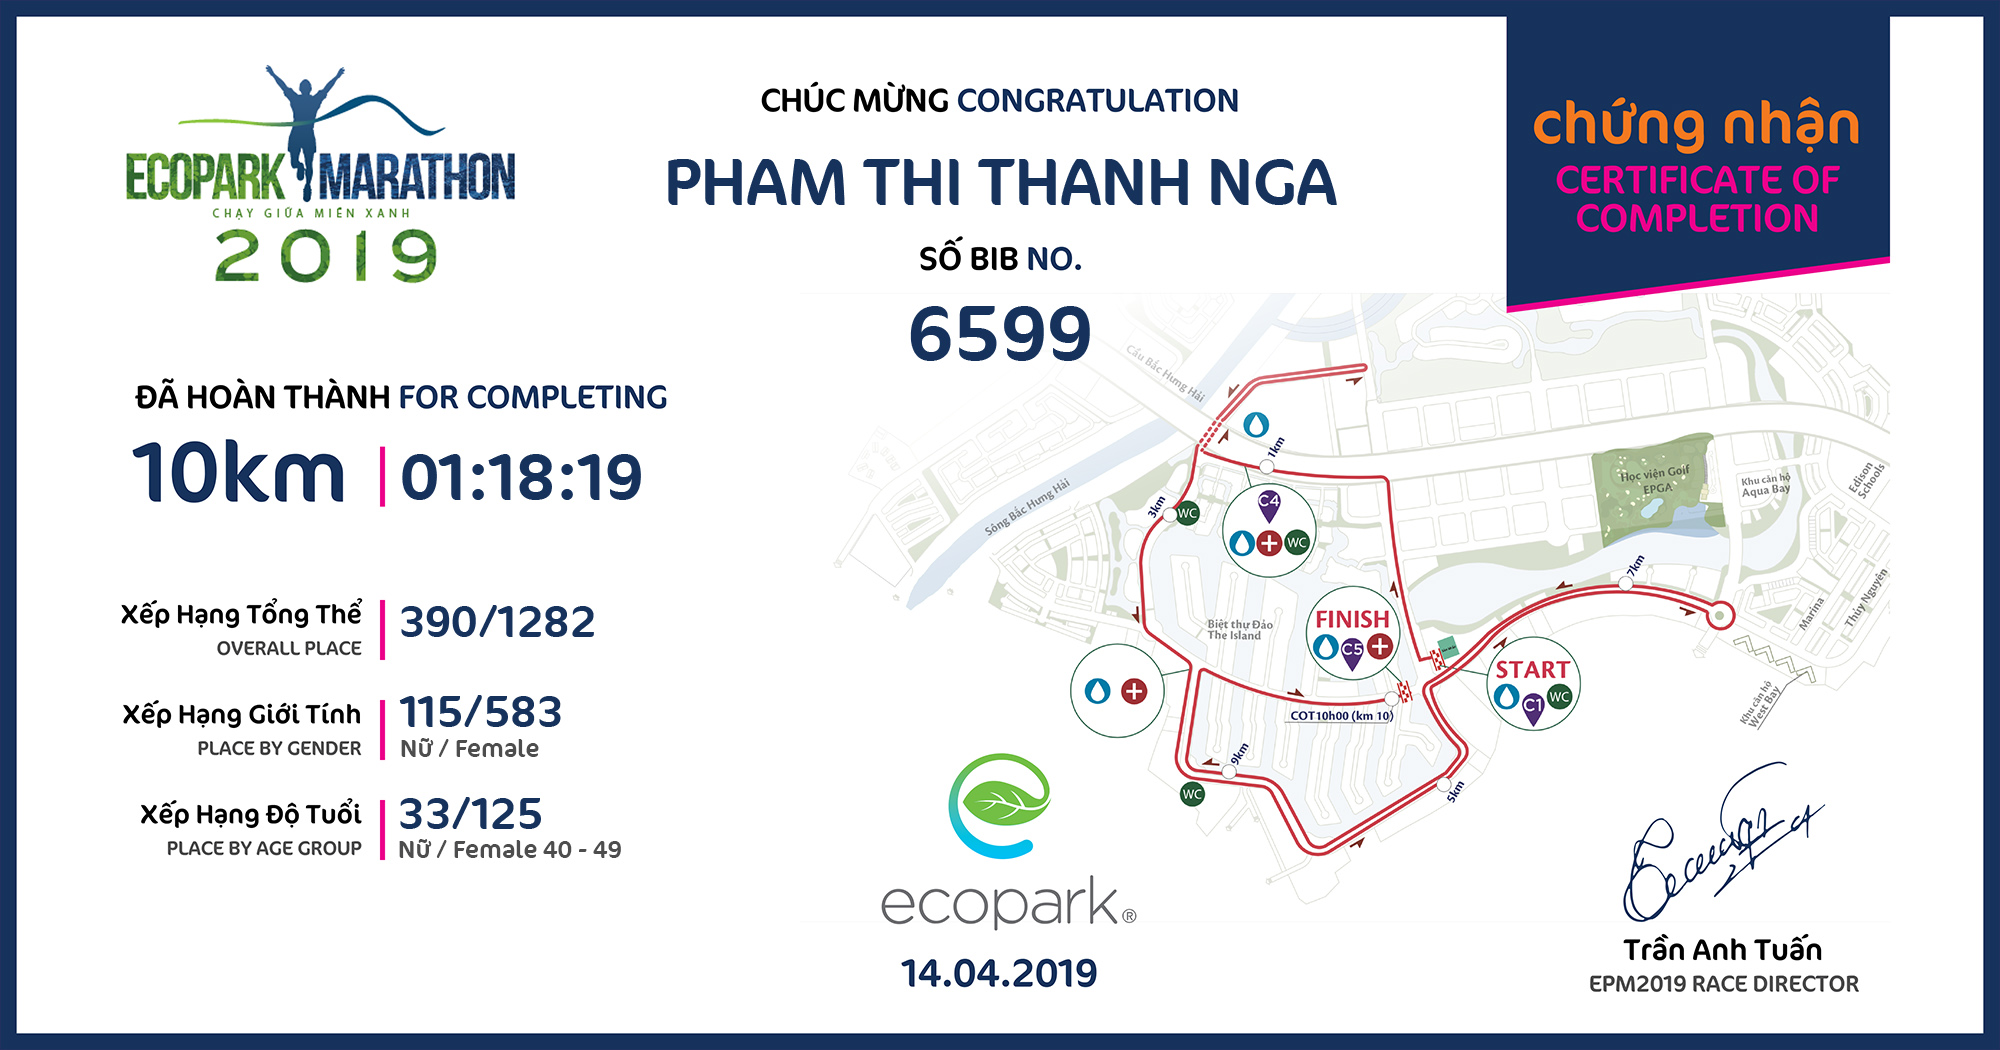 6599 - Pham Thi Thanh Nga